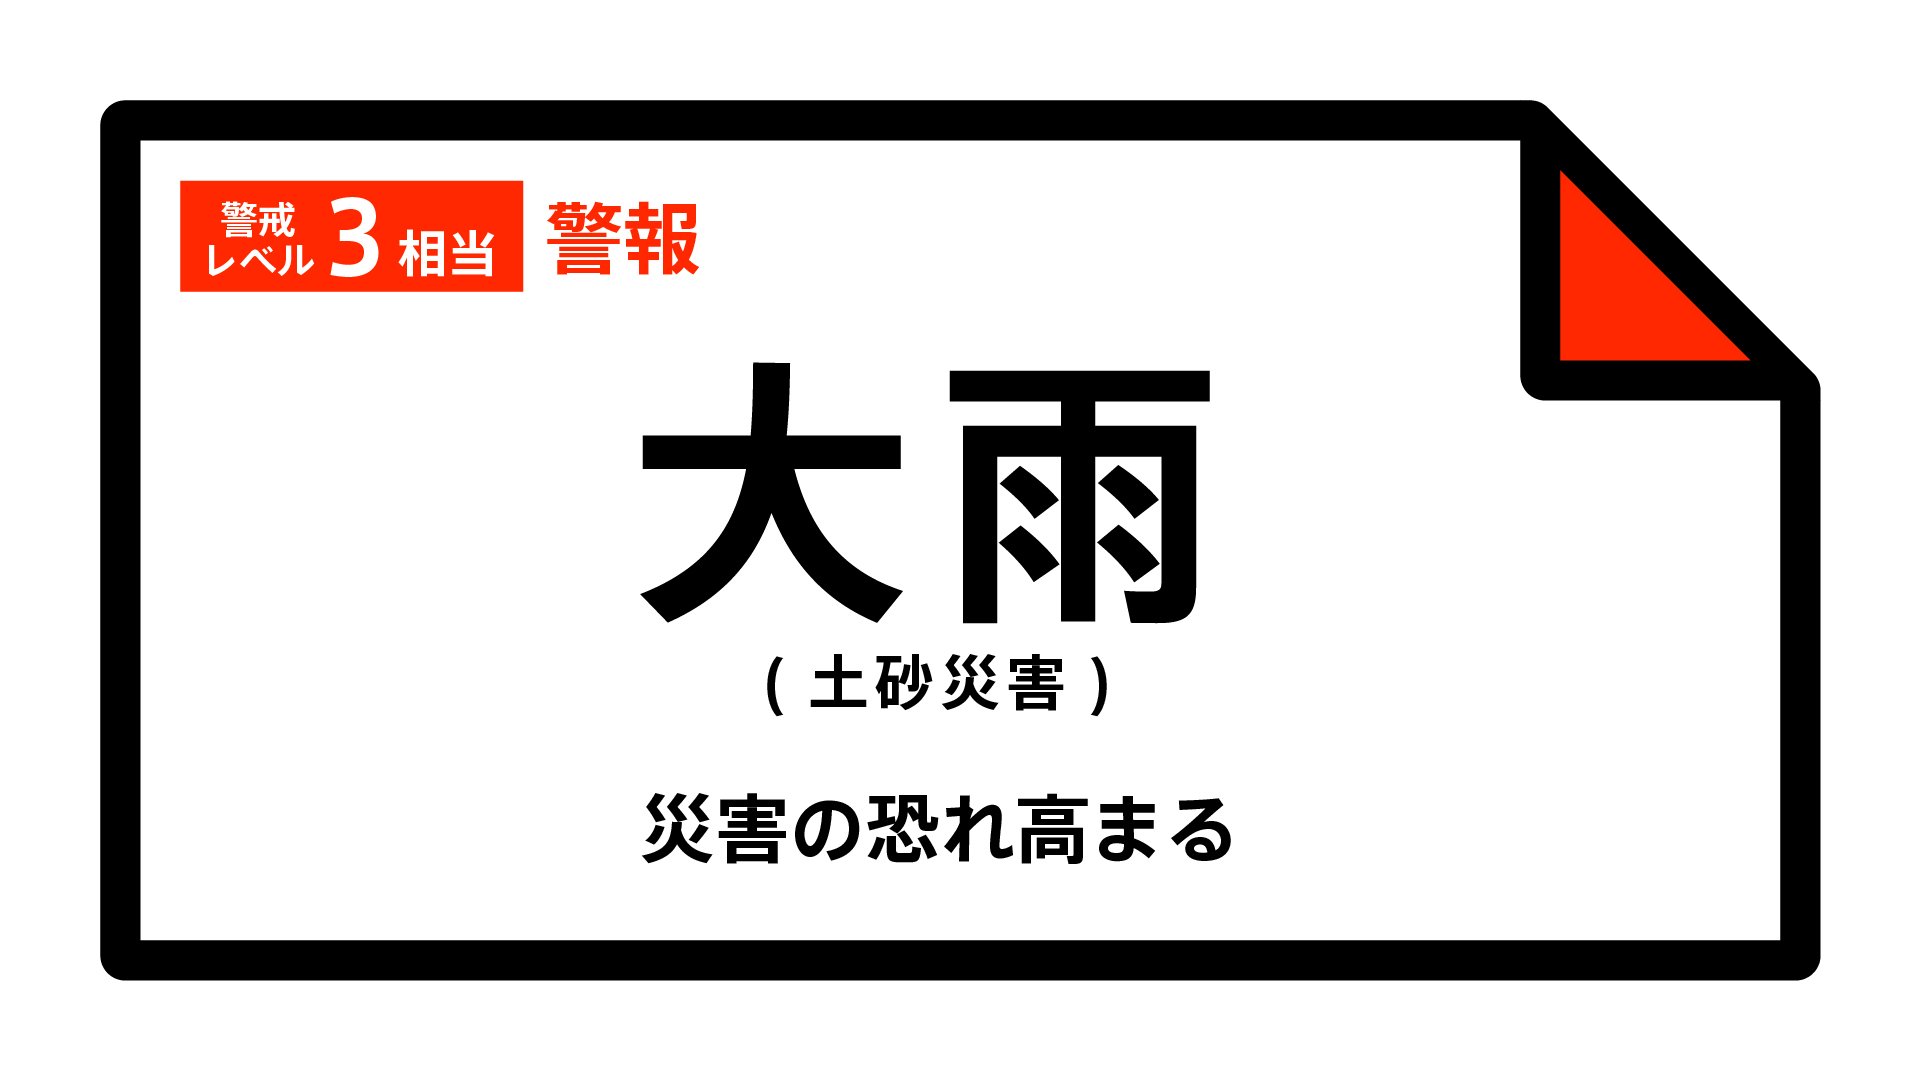 【大雨警報】石川県・輪島市、志賀町、穴水町、能登町に発表